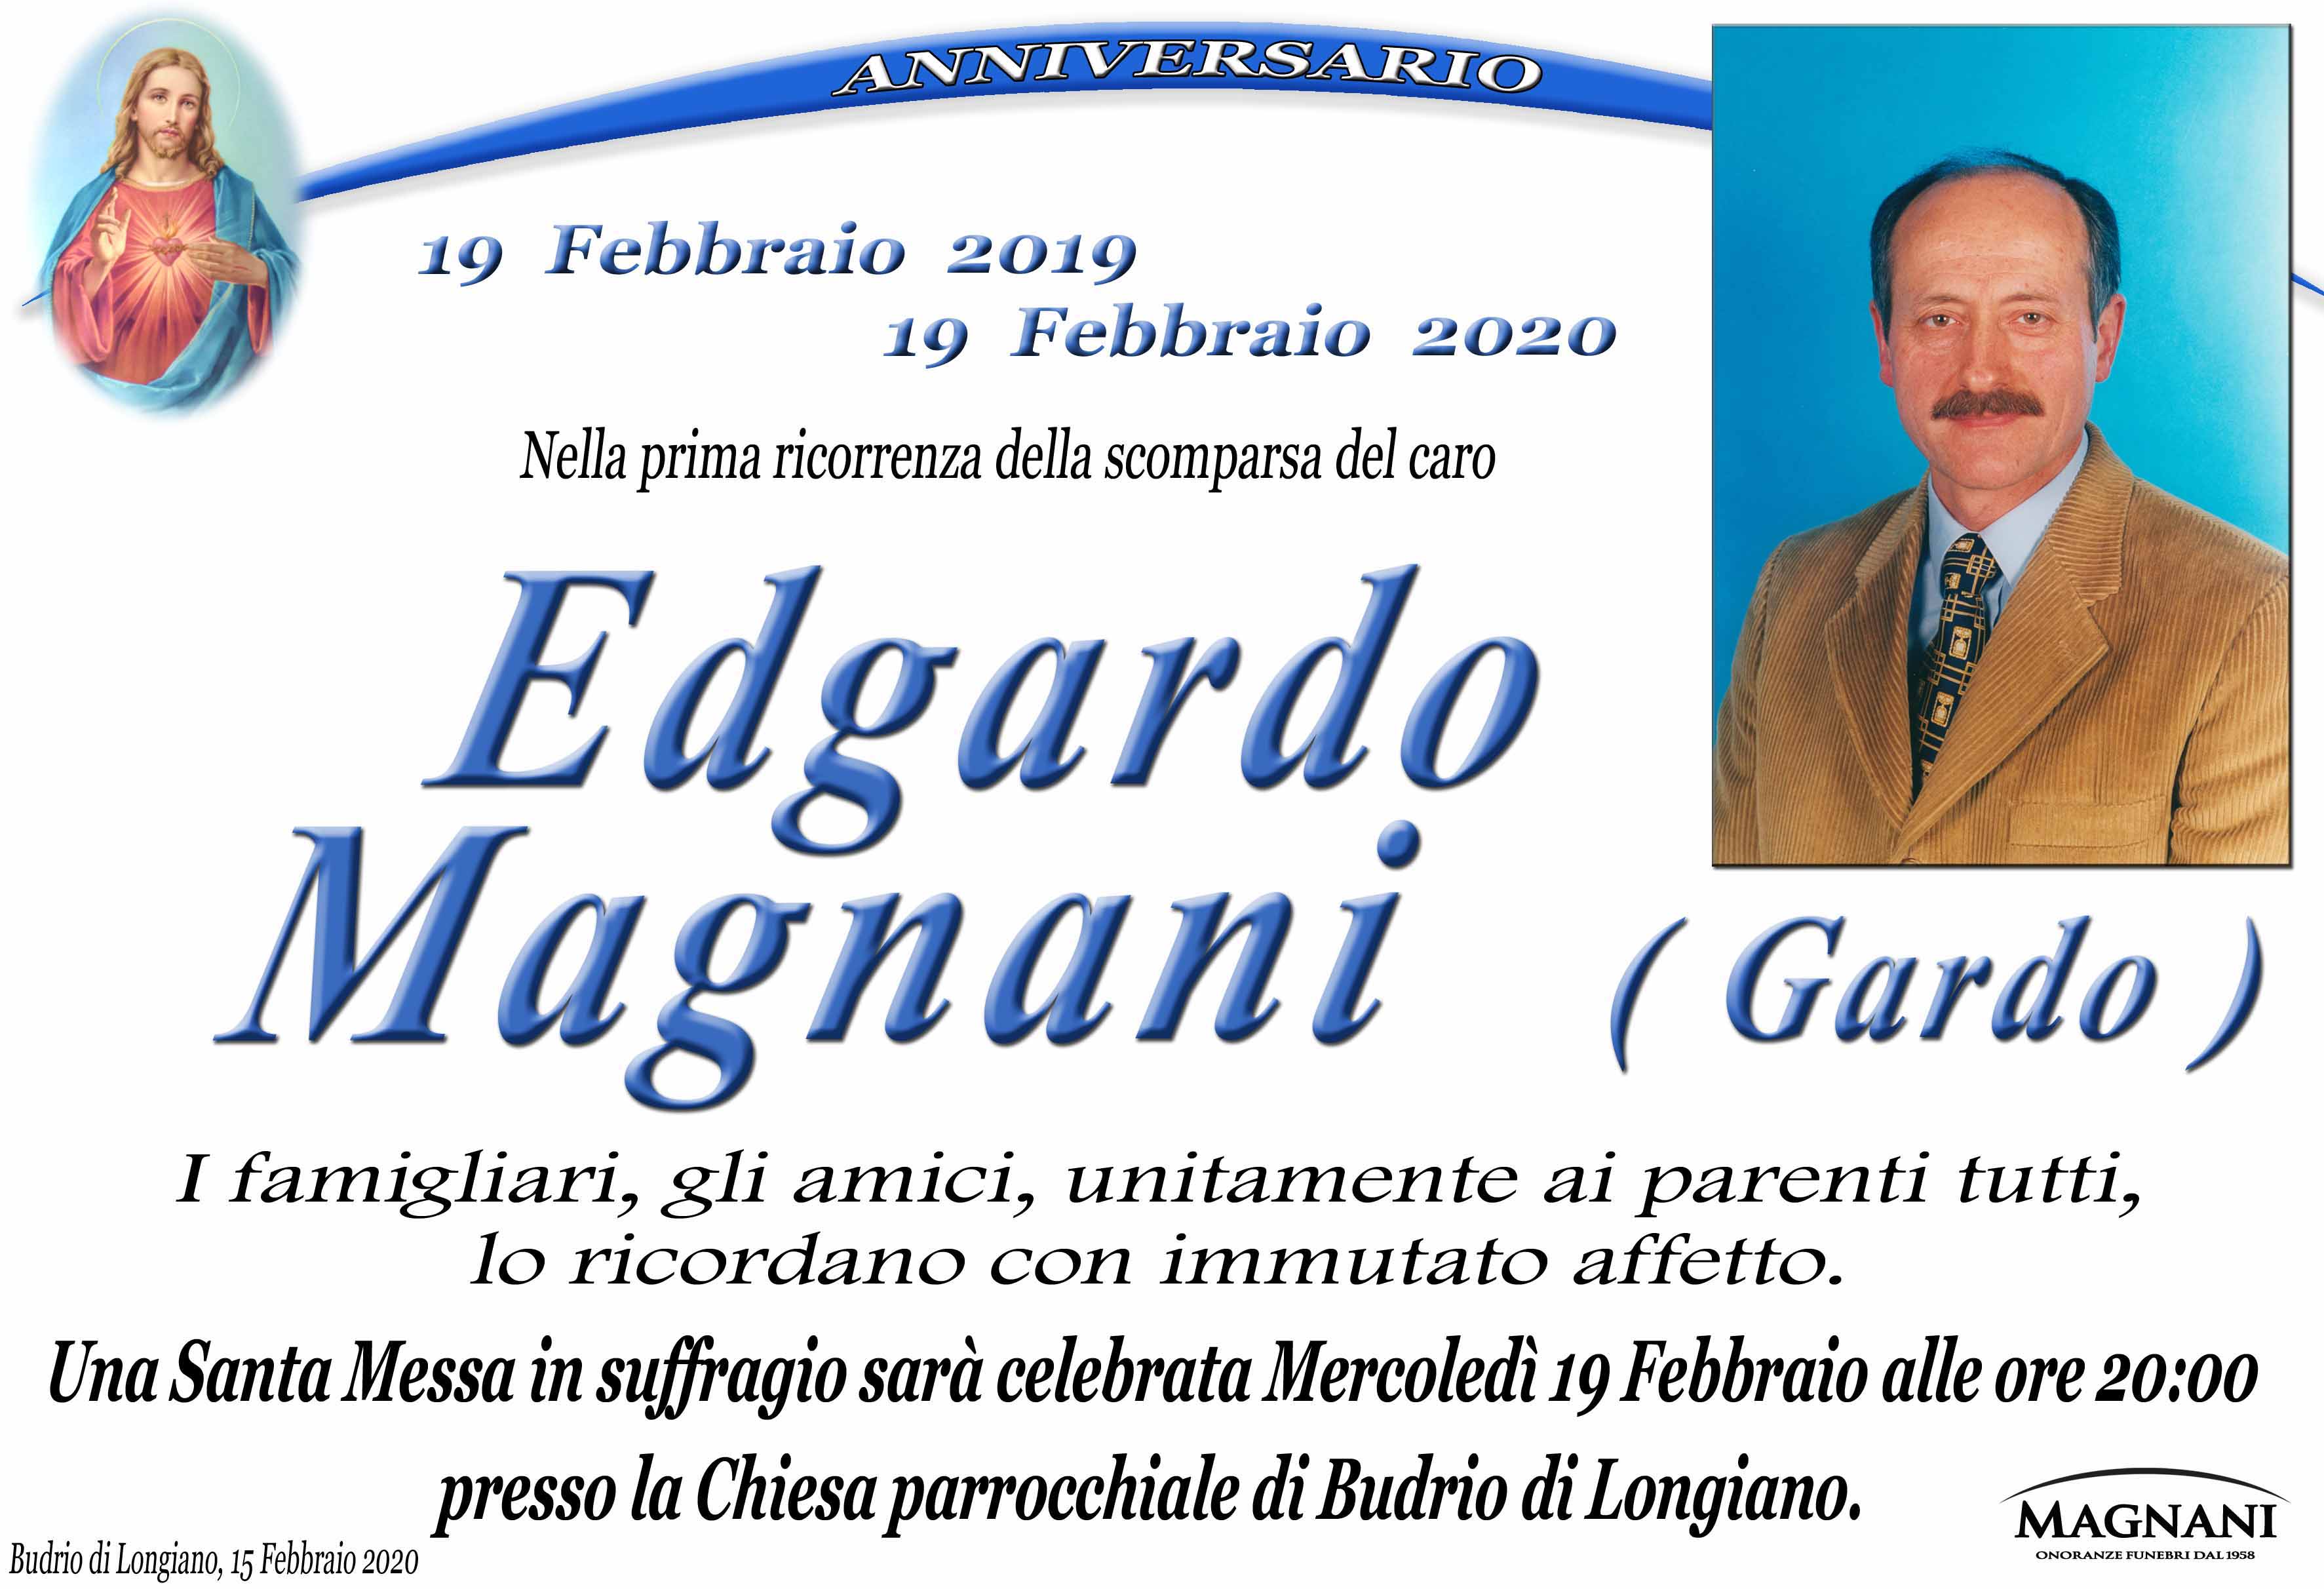 Edgardo Magnani (Gardo)